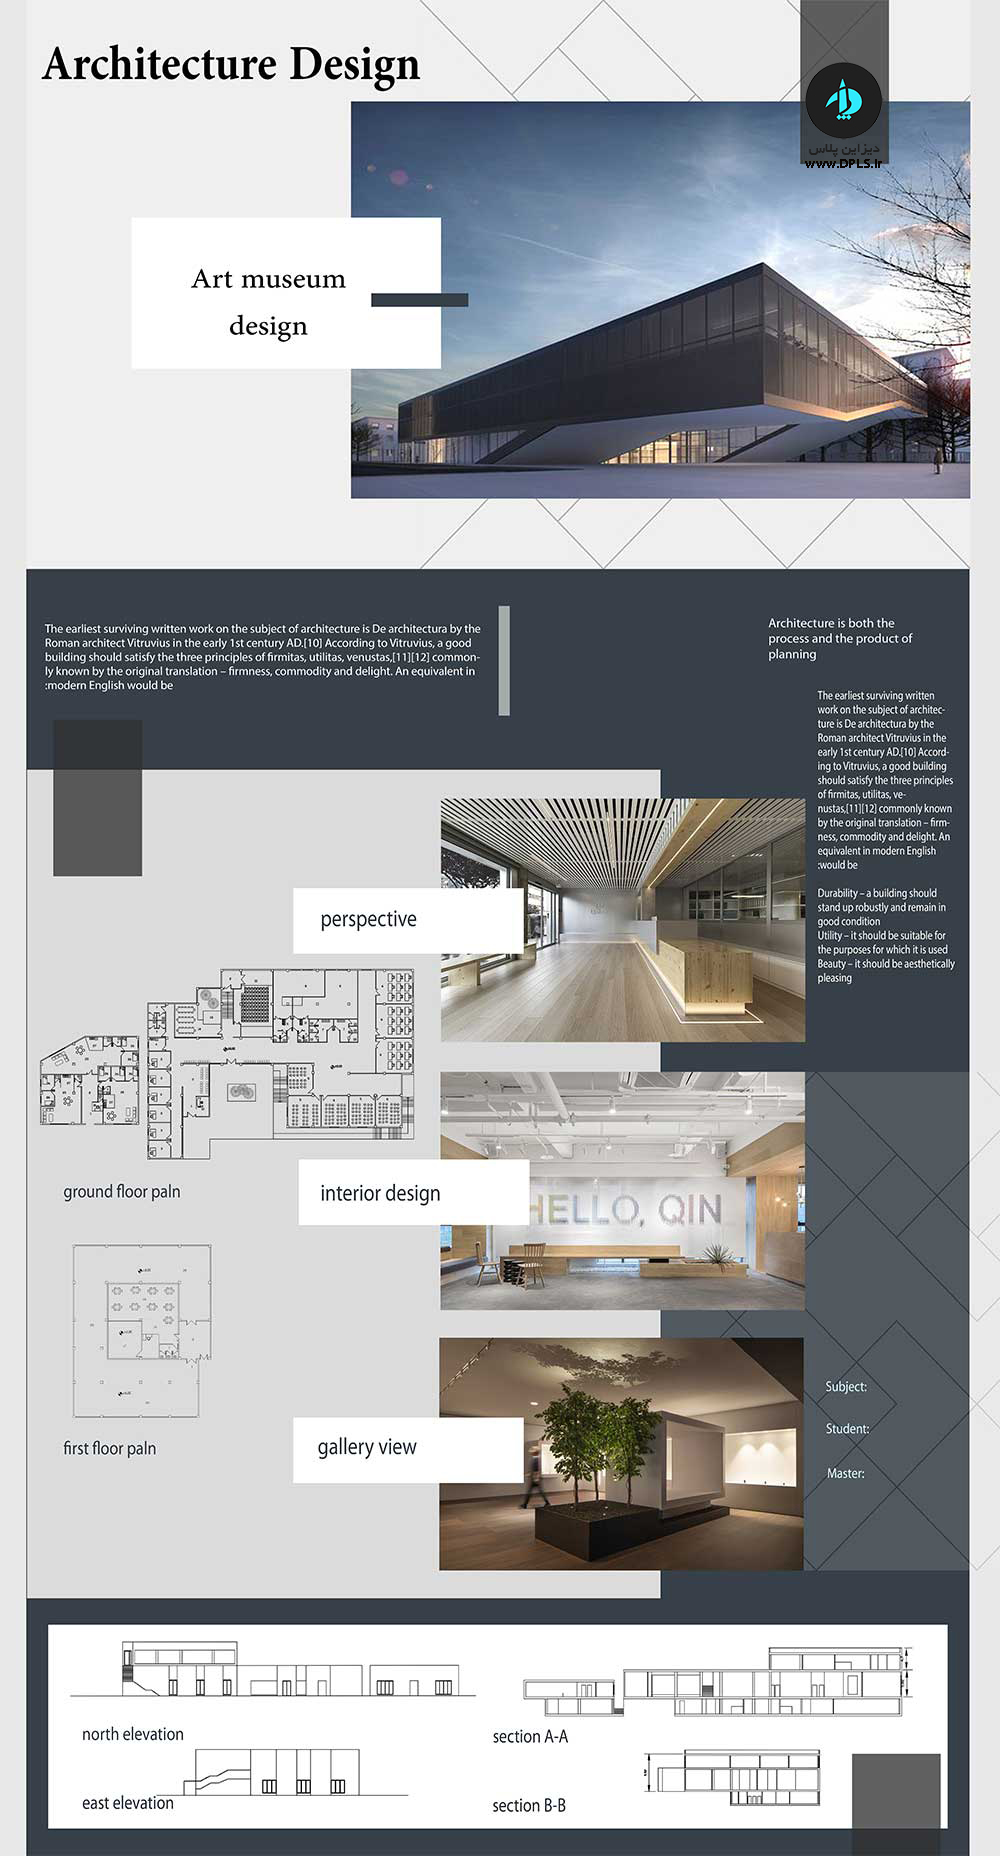 دانلود شیت لایه باز عمودی ساده 3 - استودیو هنر و معماری دیزاین پلاس